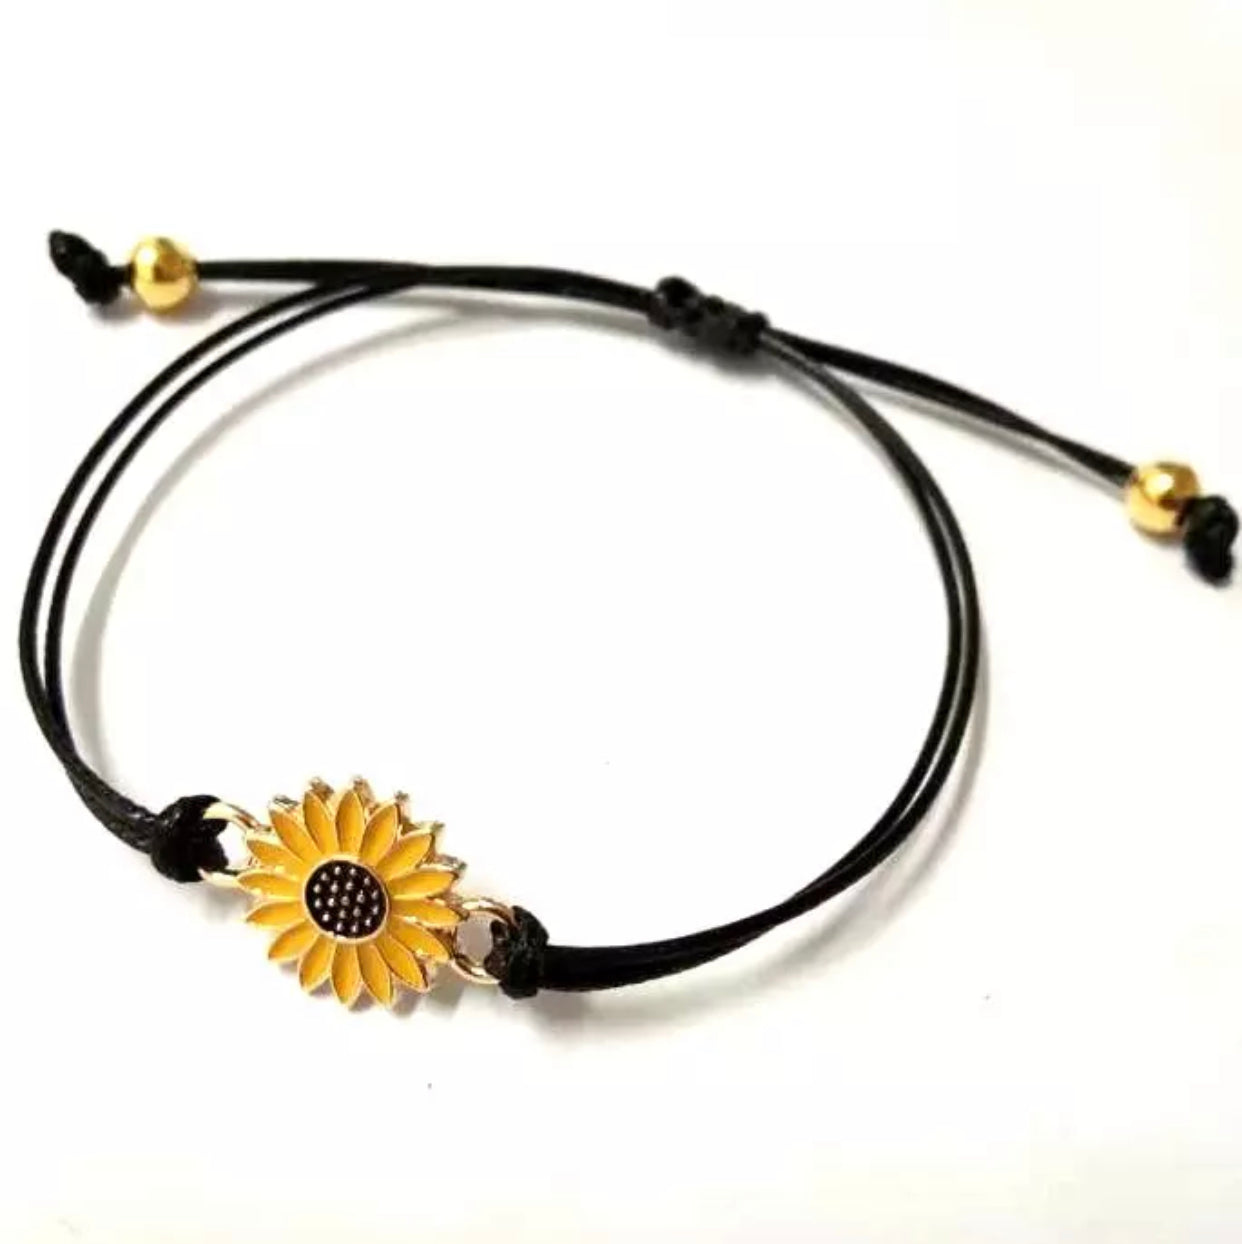 Bracelet - Smaller Sunflower